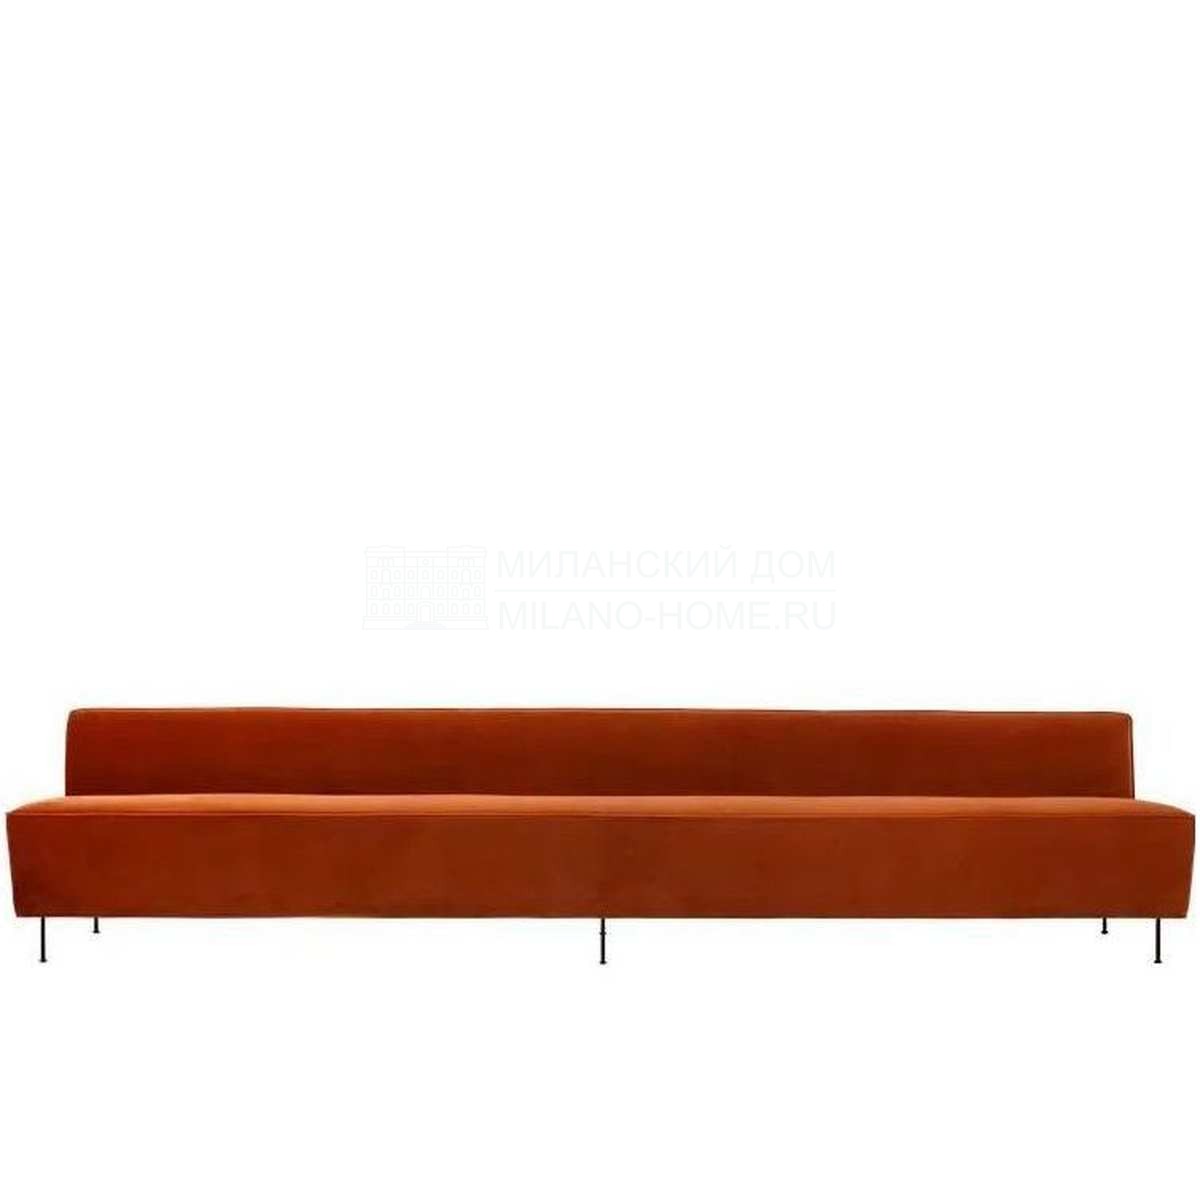 Прямой диван Modern line sofa straight из Дании фабрики GUBI